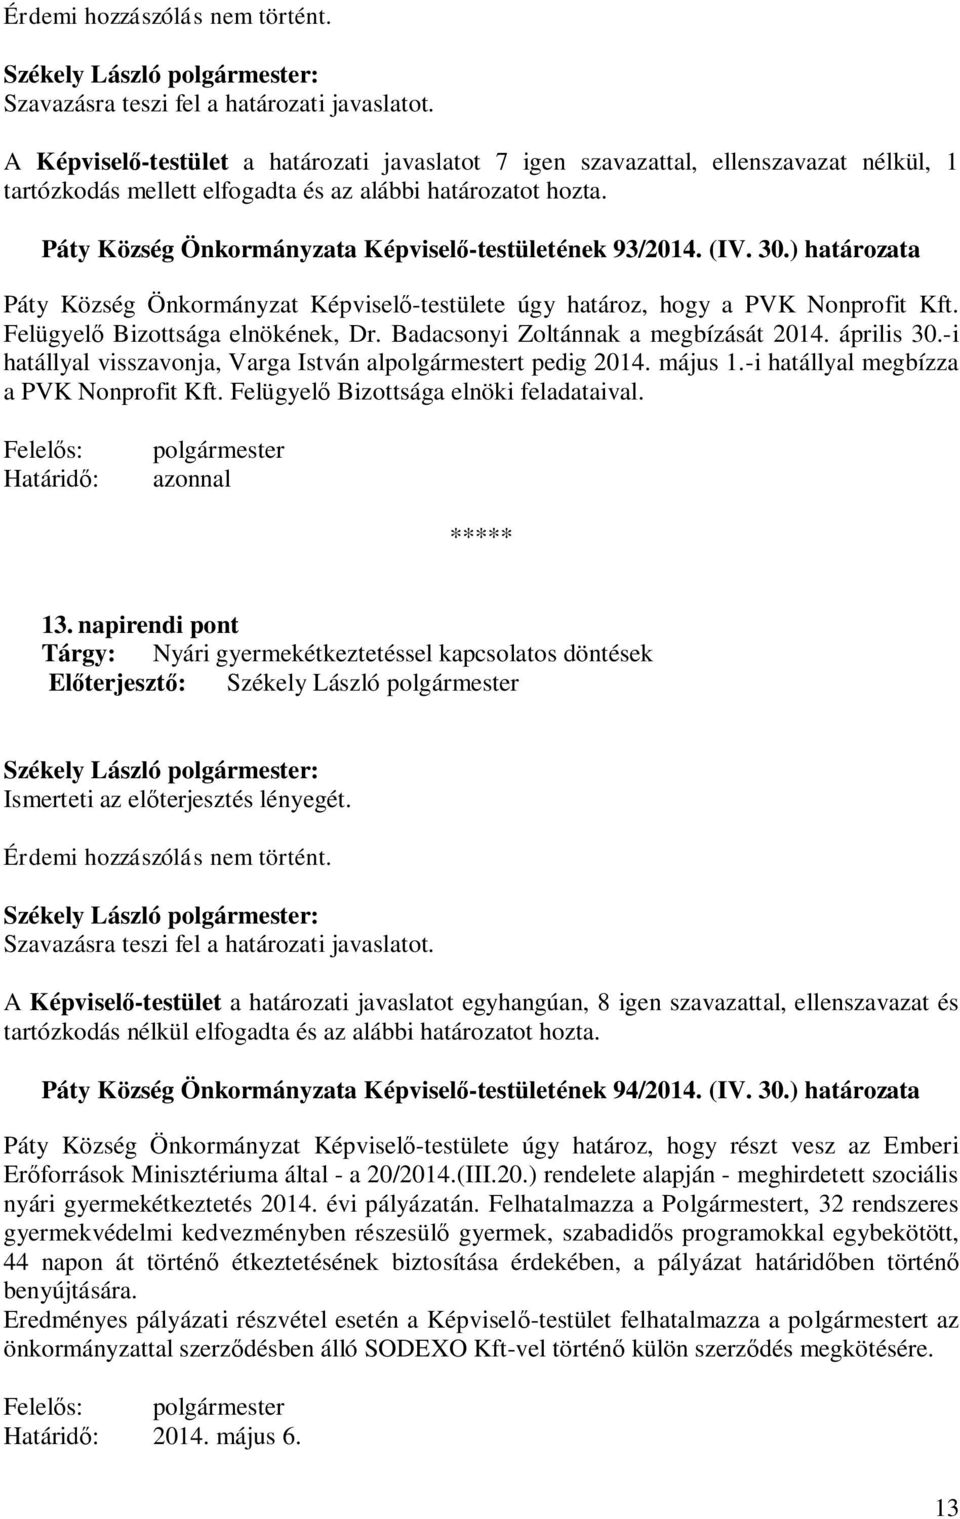 Badacsonyi Zoltánnak a megbízását 2014. április 30.-i hatállyal visszavonja, Varga István alt pedig 2014. május 1.-i hatállyal megbízza a PVK Nonprofit Kft. Felügyel Bizottsága elnöki feladataival.